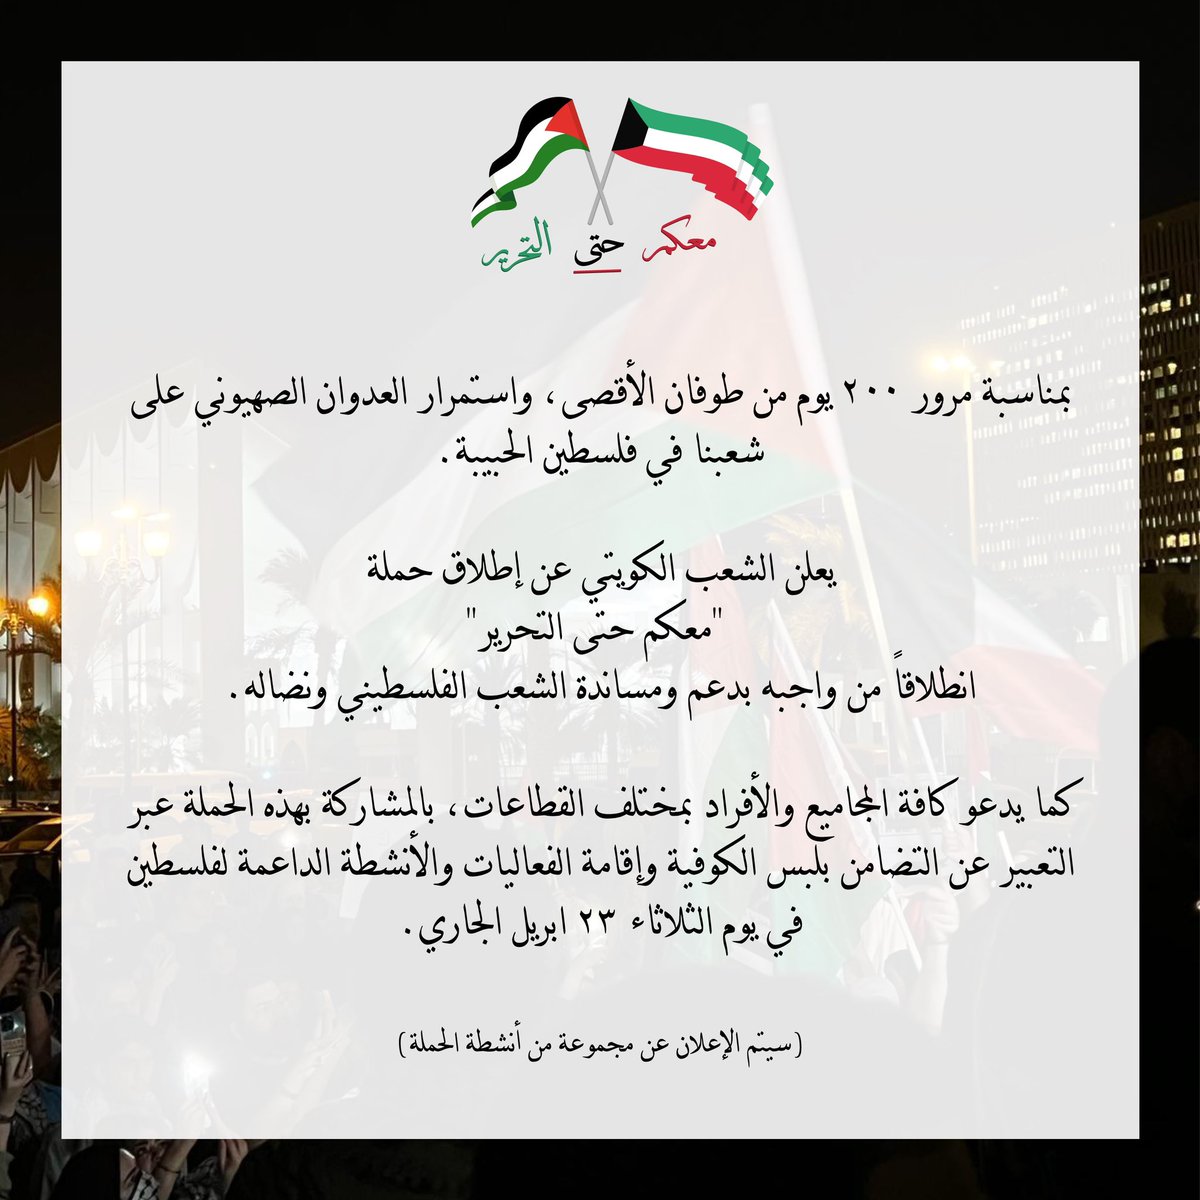 يعلن الشعب الكويتي عن إطلاق حملة 'معكم حتى التحرير' مع مرور ٢٠٠ يوم على طوفان الأقصى، واستمرار العدوان الصهيوني على شعبنا في فلسطين الحبيبة. يوم الثلاثاء ٢٣ أبريل ٢٠٢٤ #معكم_حتى_التحرير